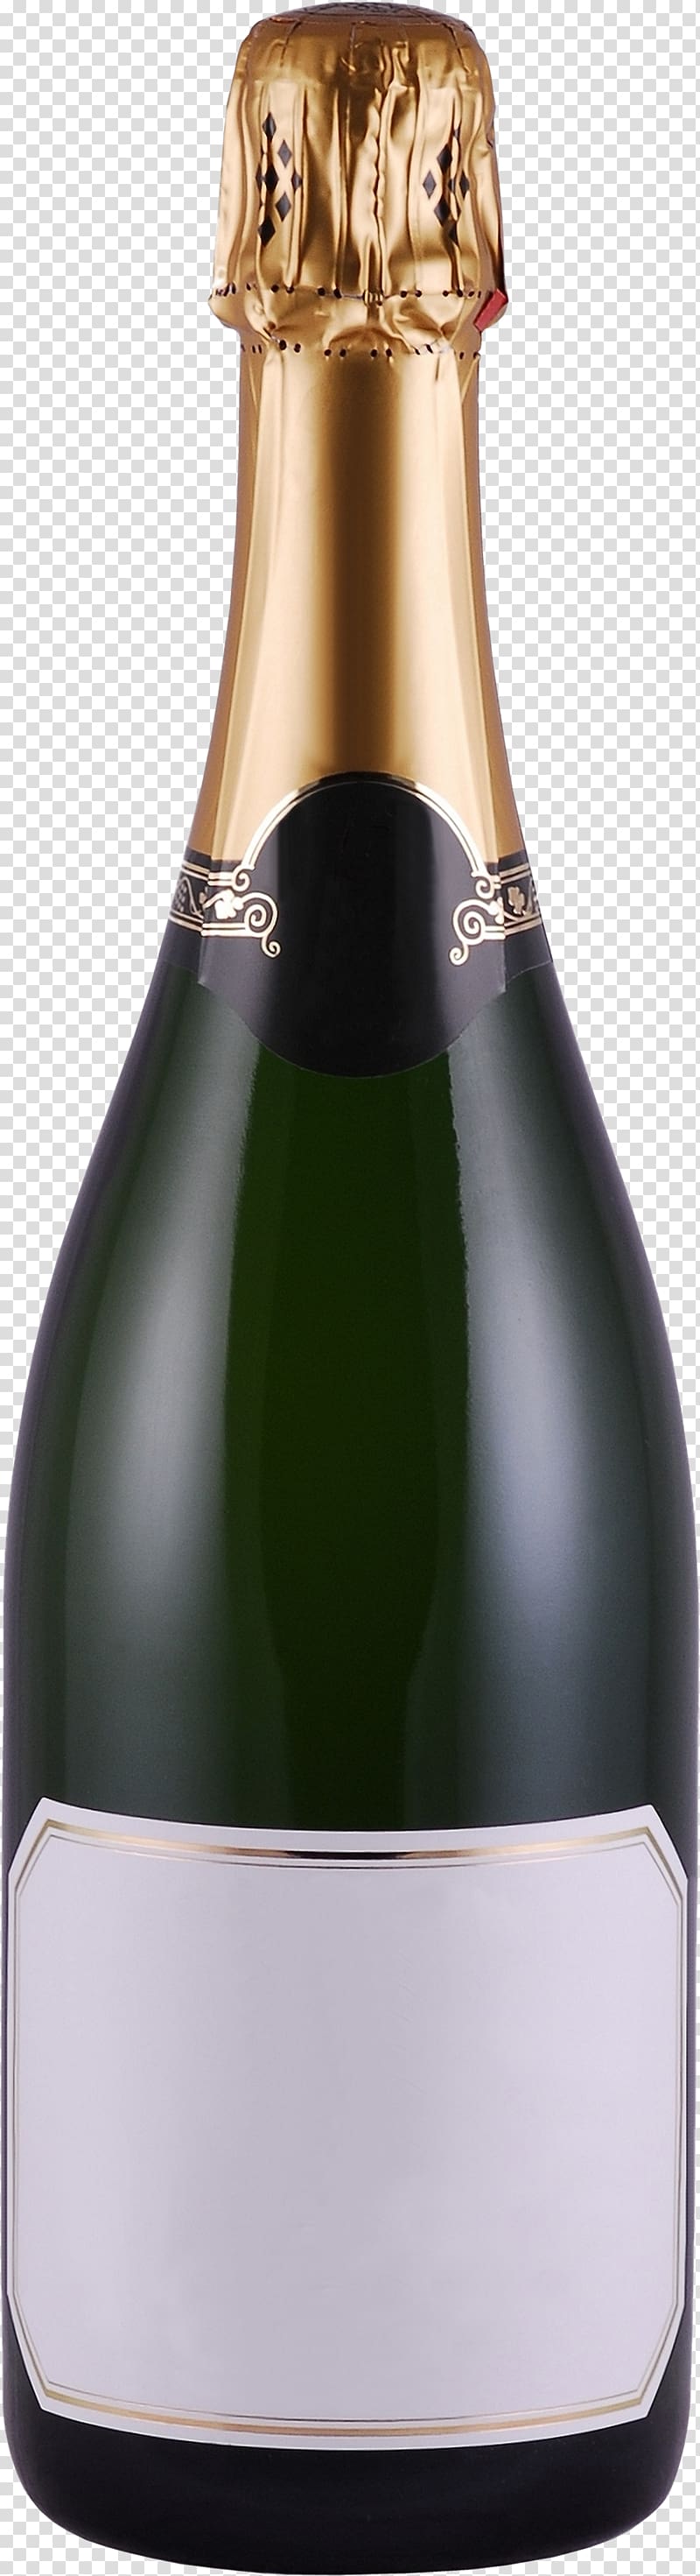 Champagne Bottle Moët & Chandon, Champagne bottle transparent background PNG clipart